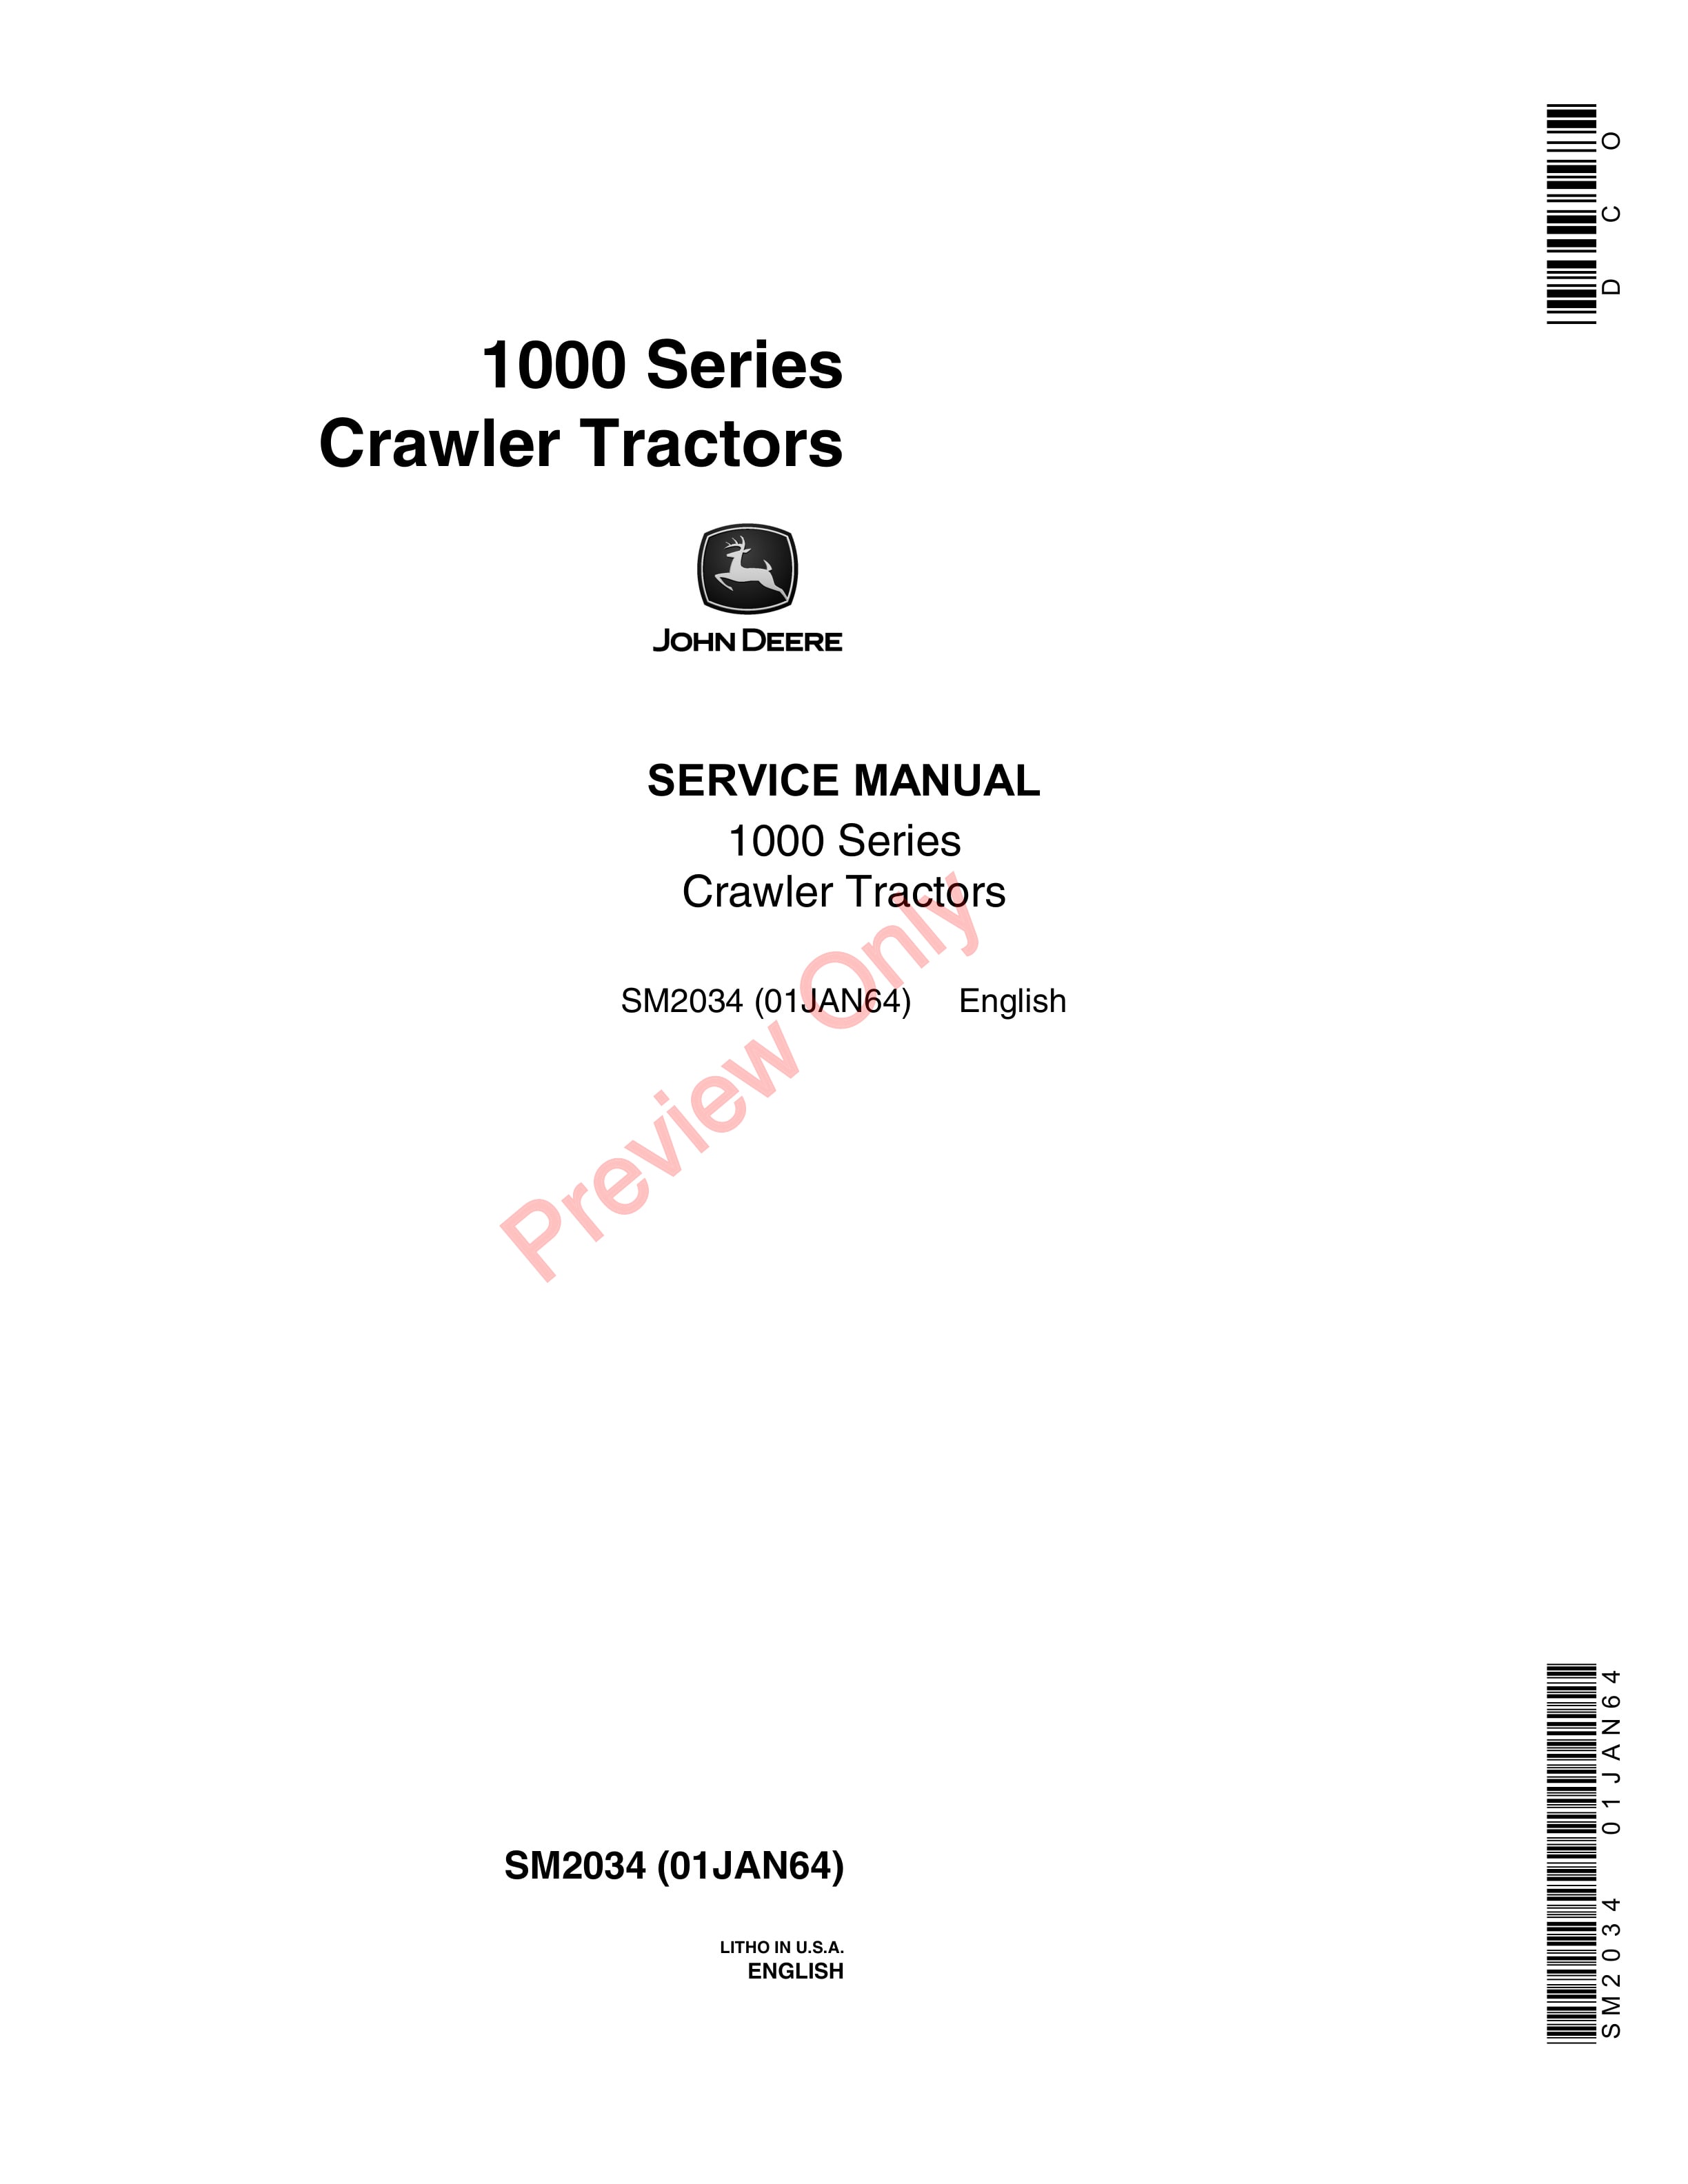 John Deere 1000 Series Crawler Tractors Service Manual SM2034 01JAN64-1